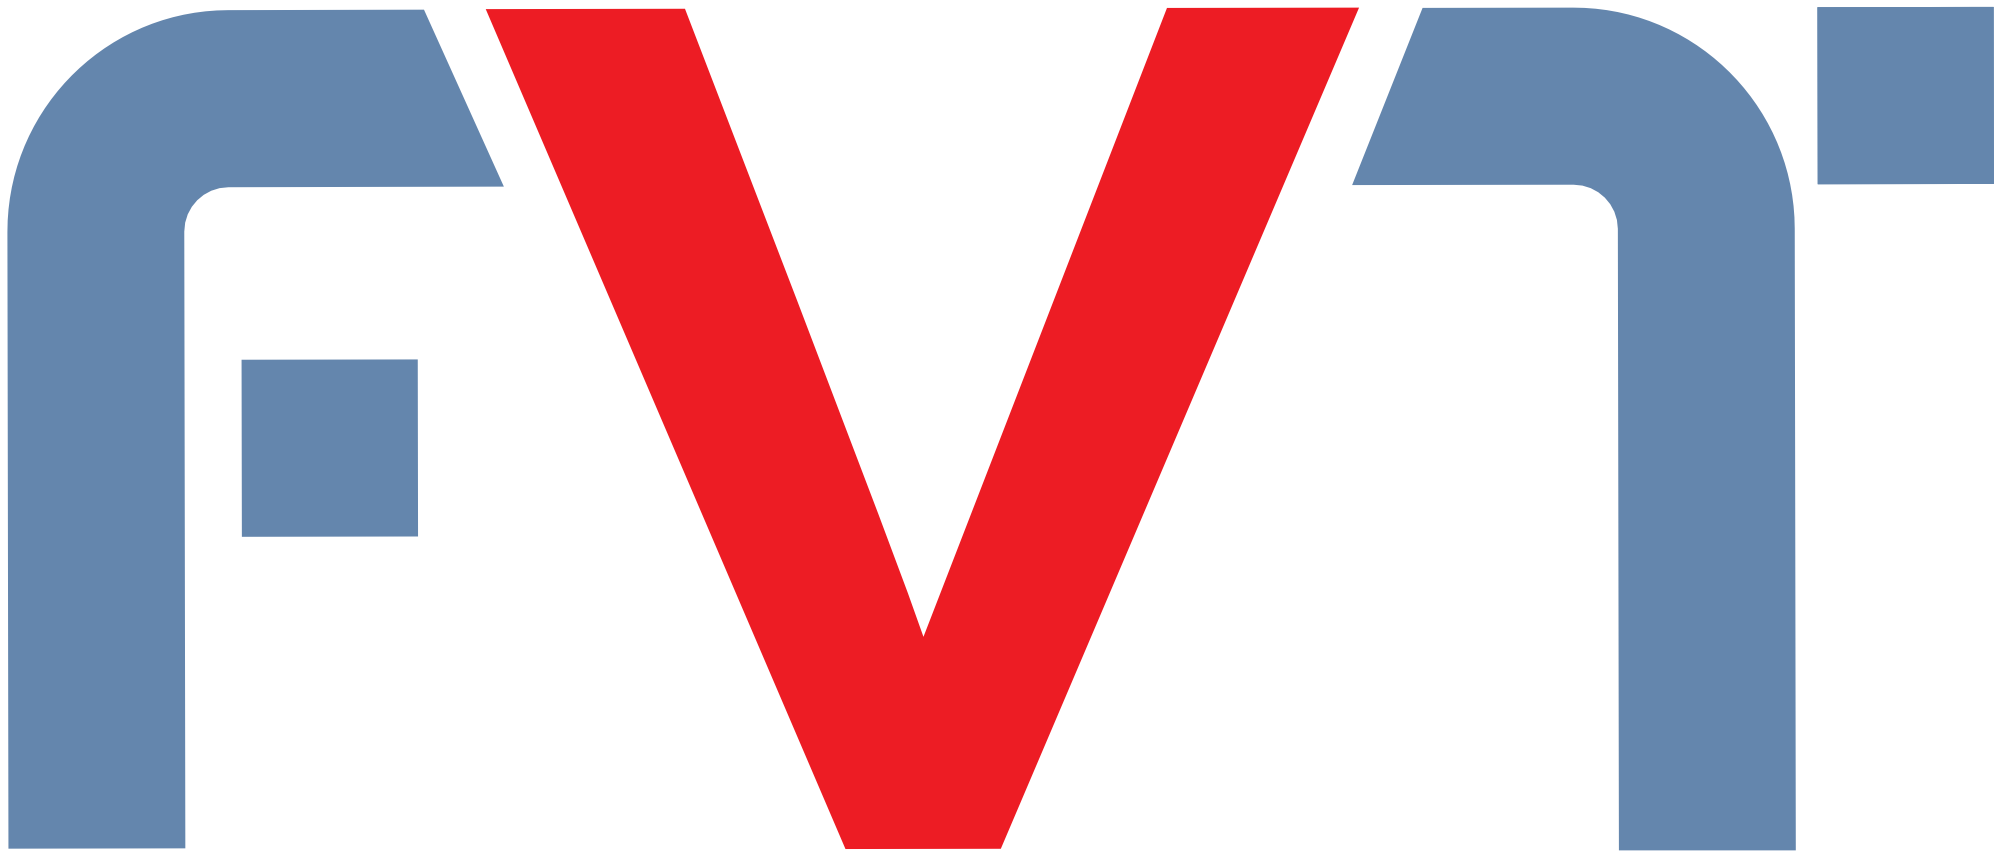 FVT mbH Logo